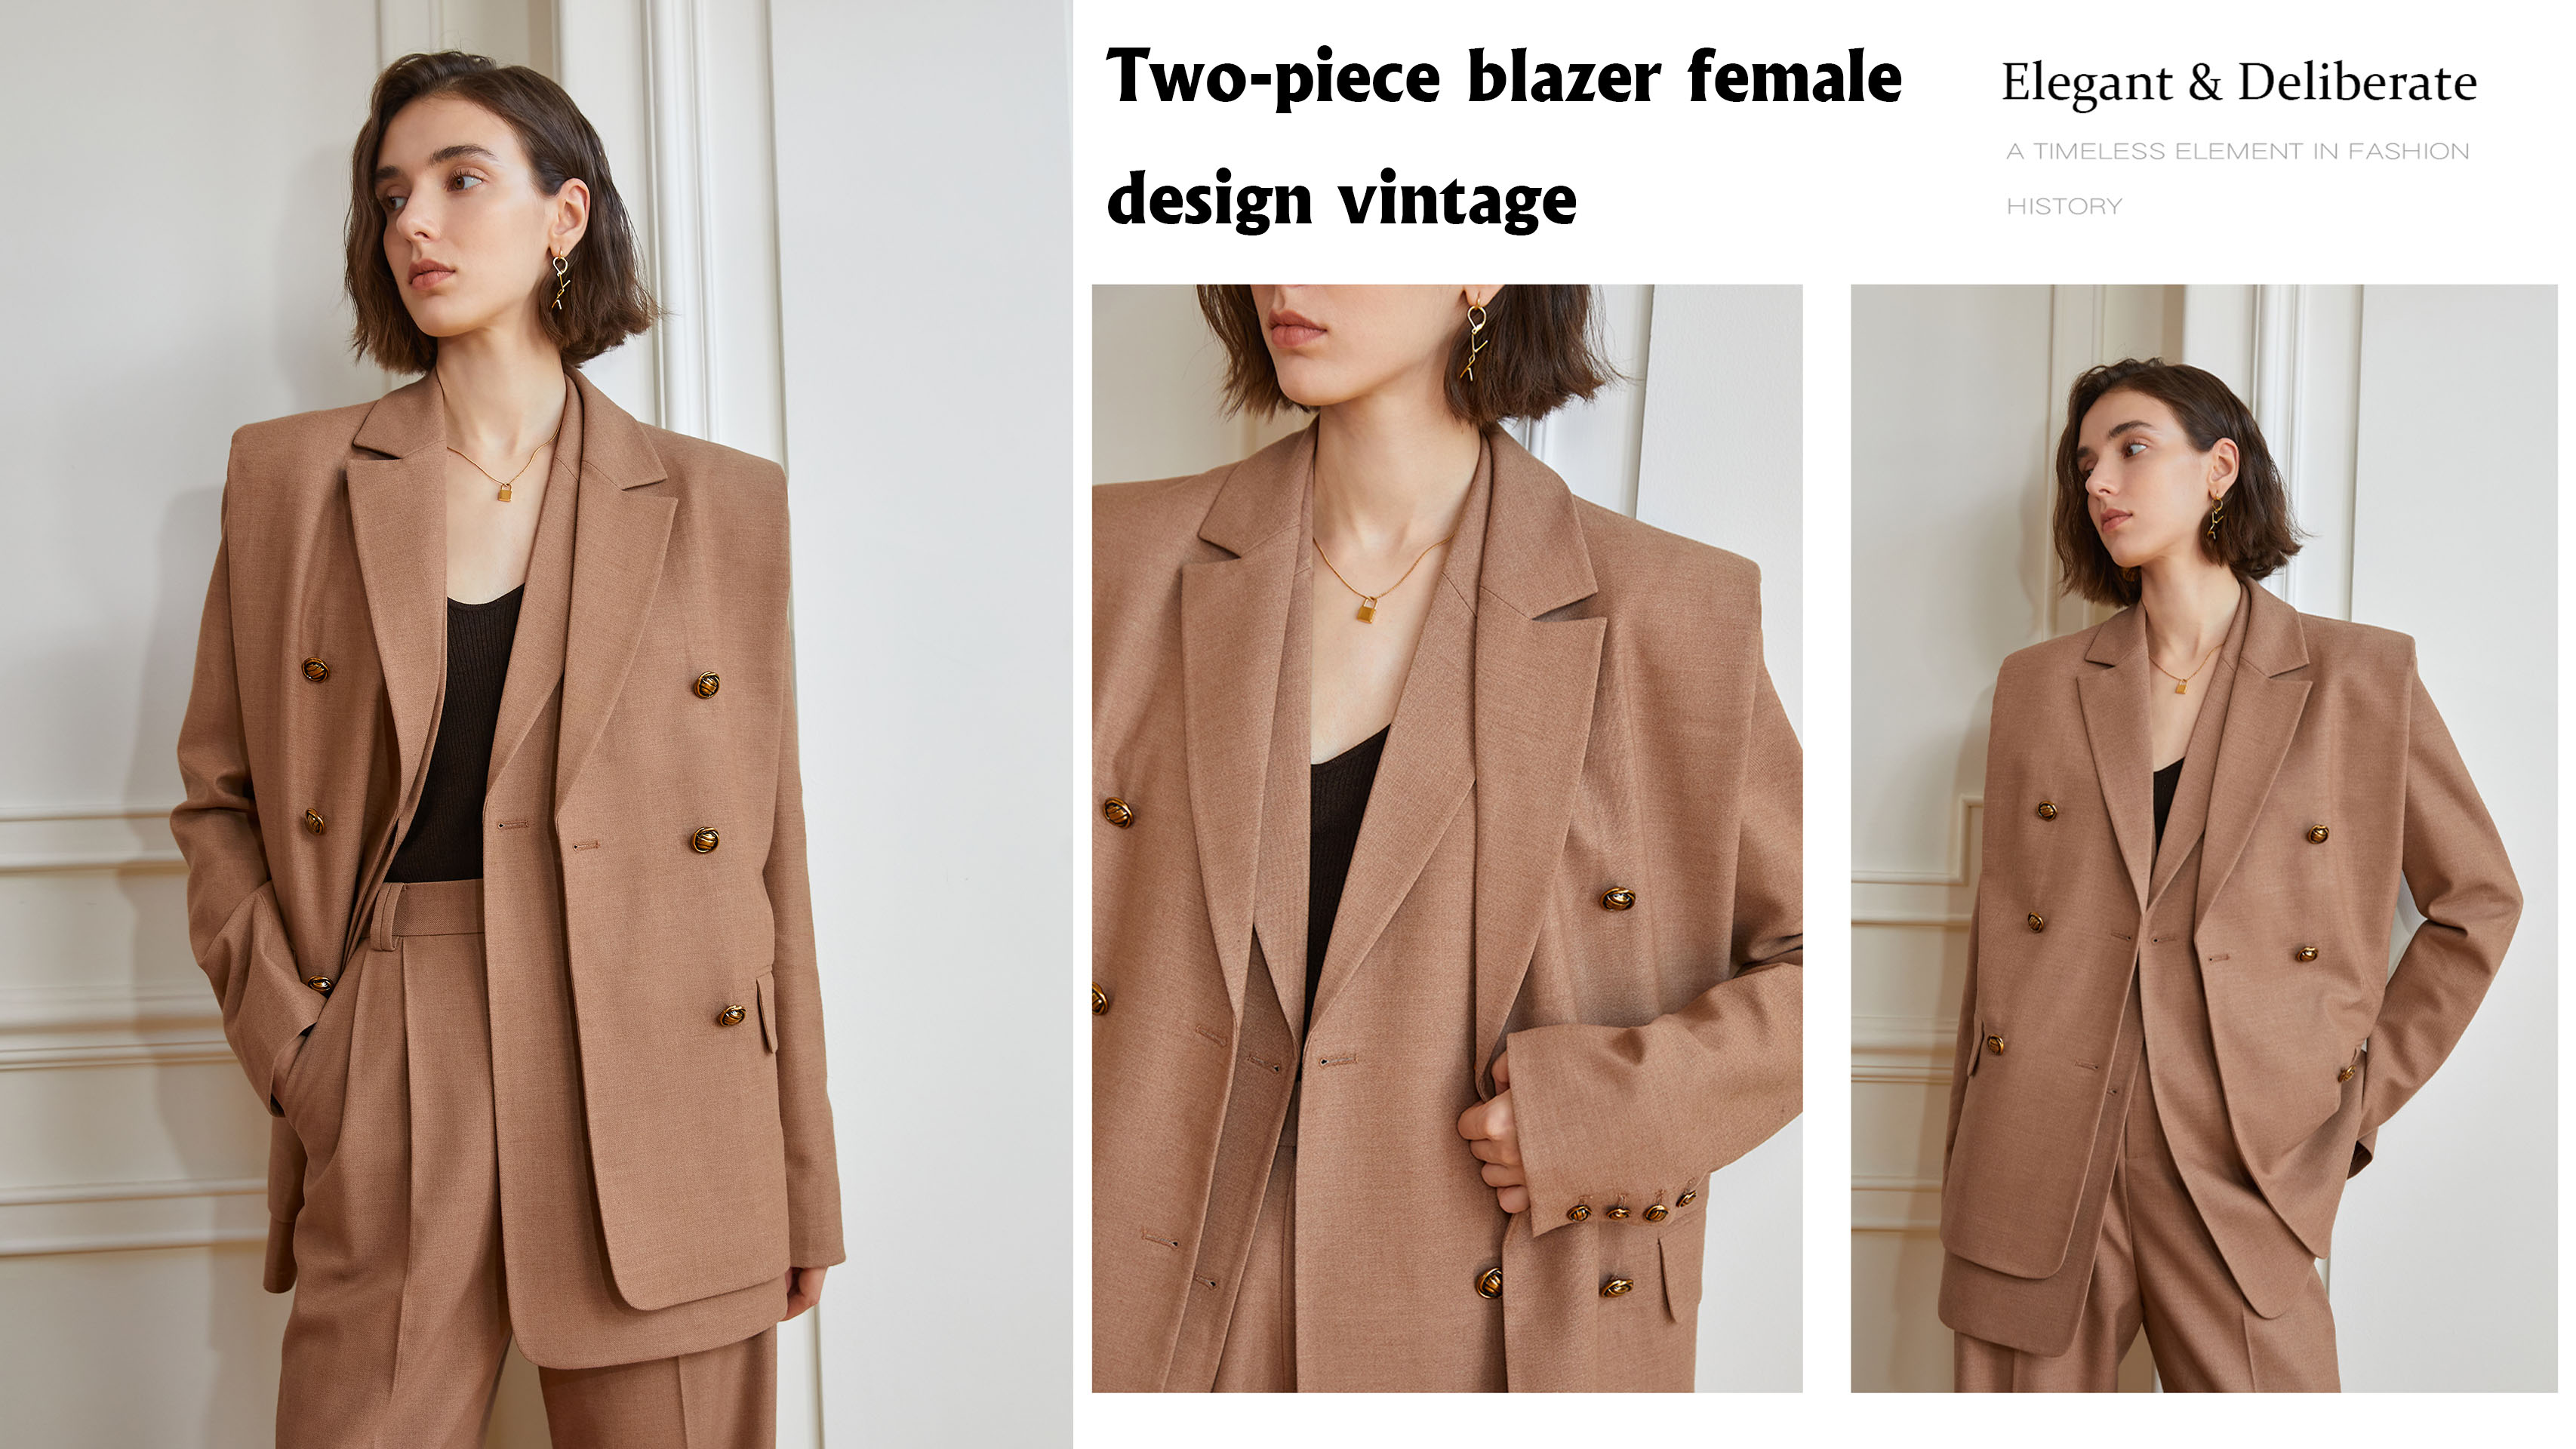 En İyi İki Parçalı Blazer Bayan Tasarım Vintage Şirketi – Auschalink